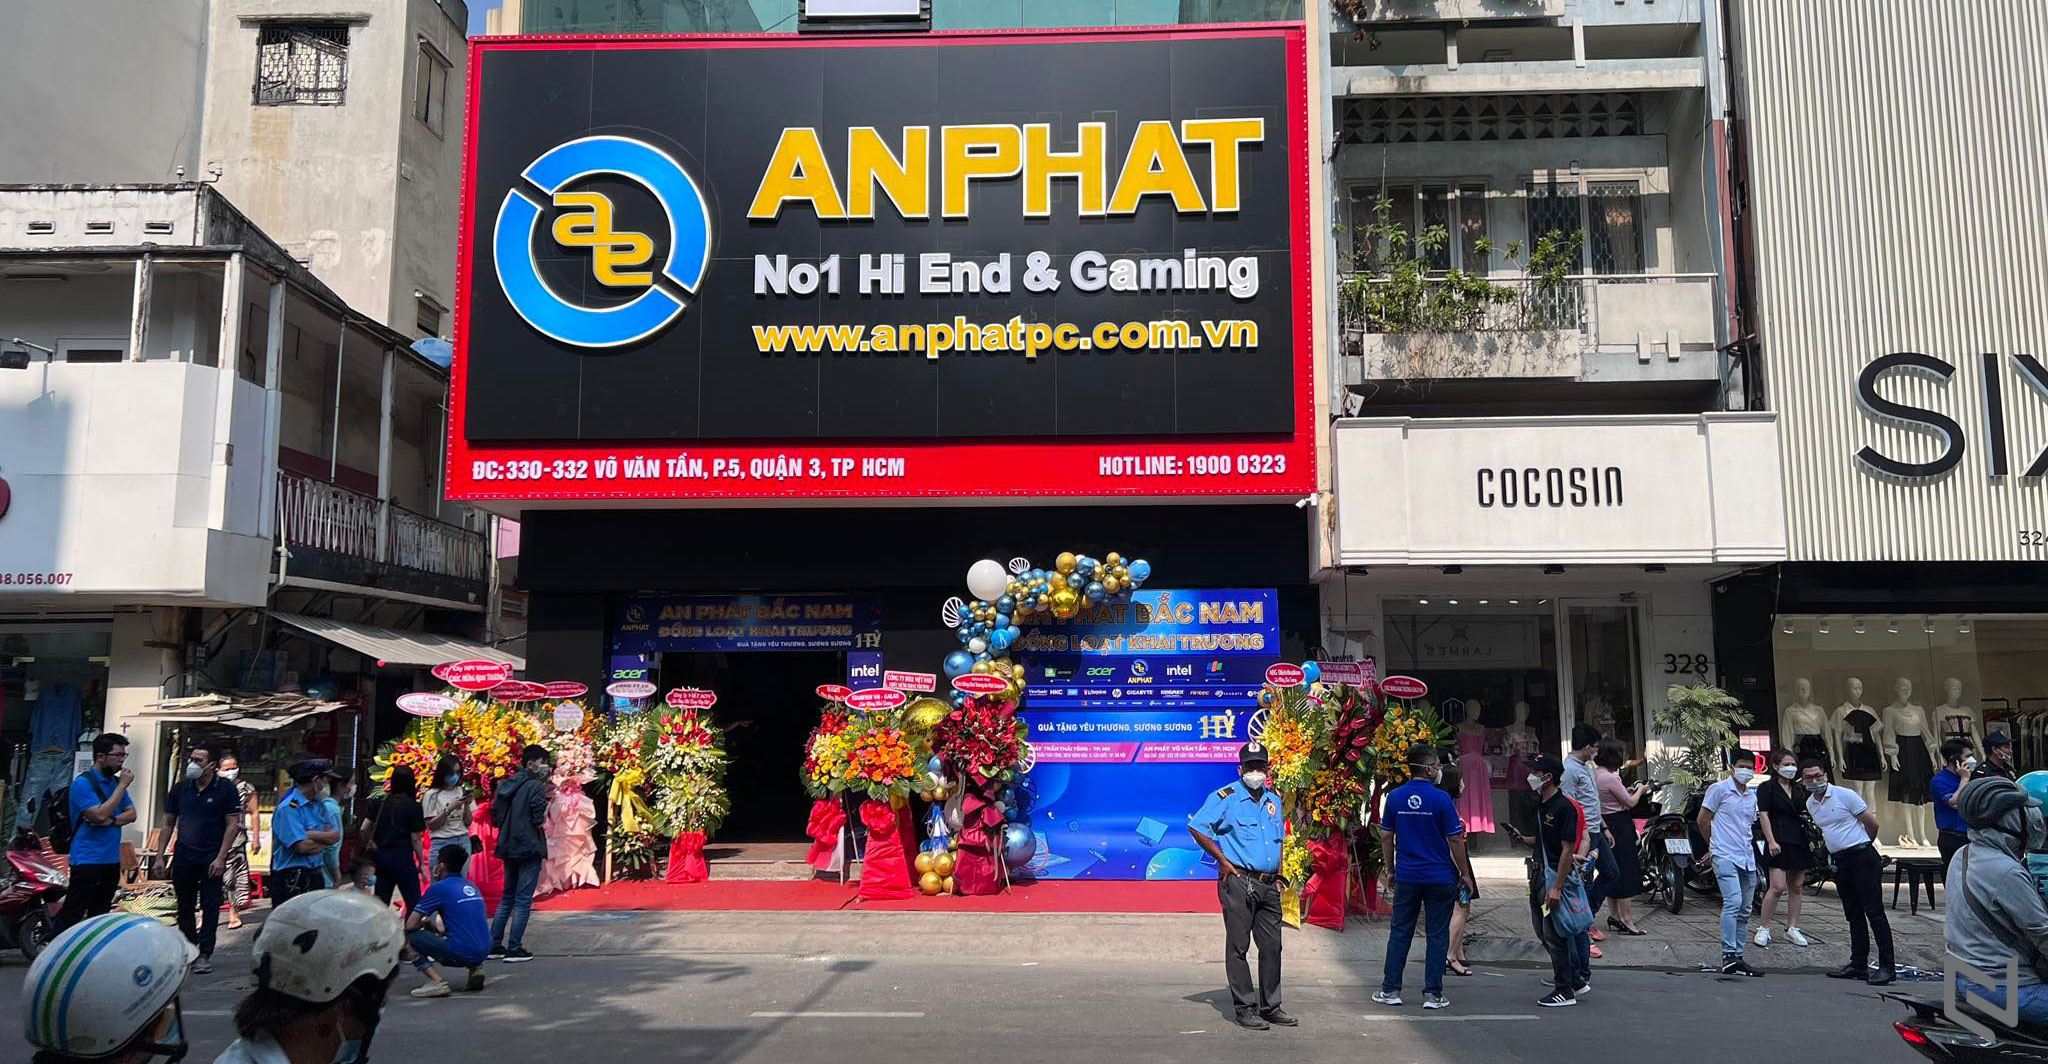 An Phát Computer đồng loạt khai trương hai chi nhánh mới tại Hà Nội và TP. Hồ Chí Minh